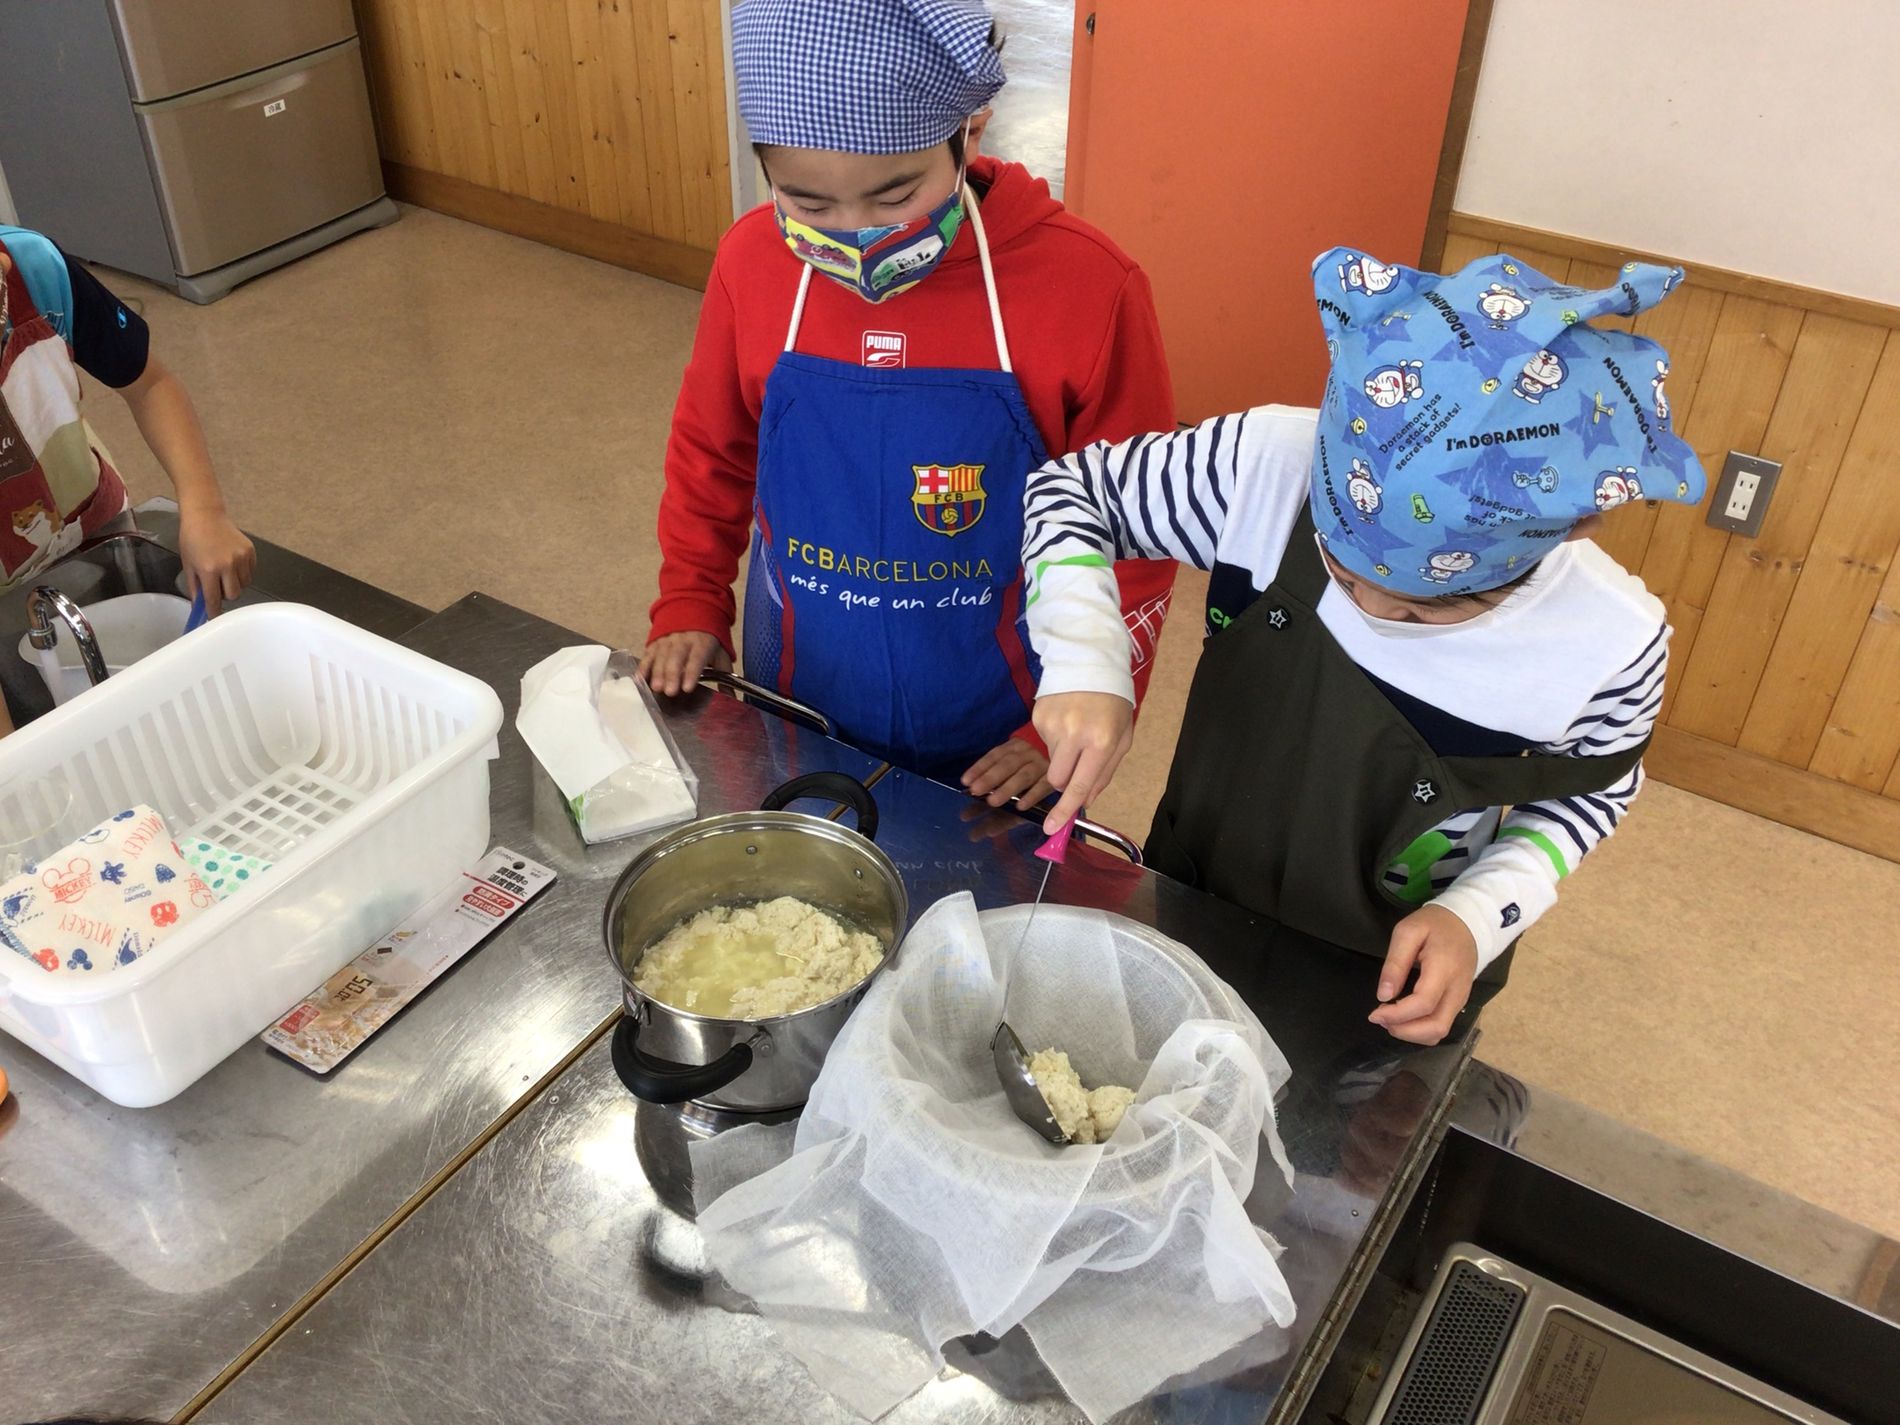 鍋にできた豆腐を、お玉を使ってザルに濾している男の子とそれを見守る男の子の写真